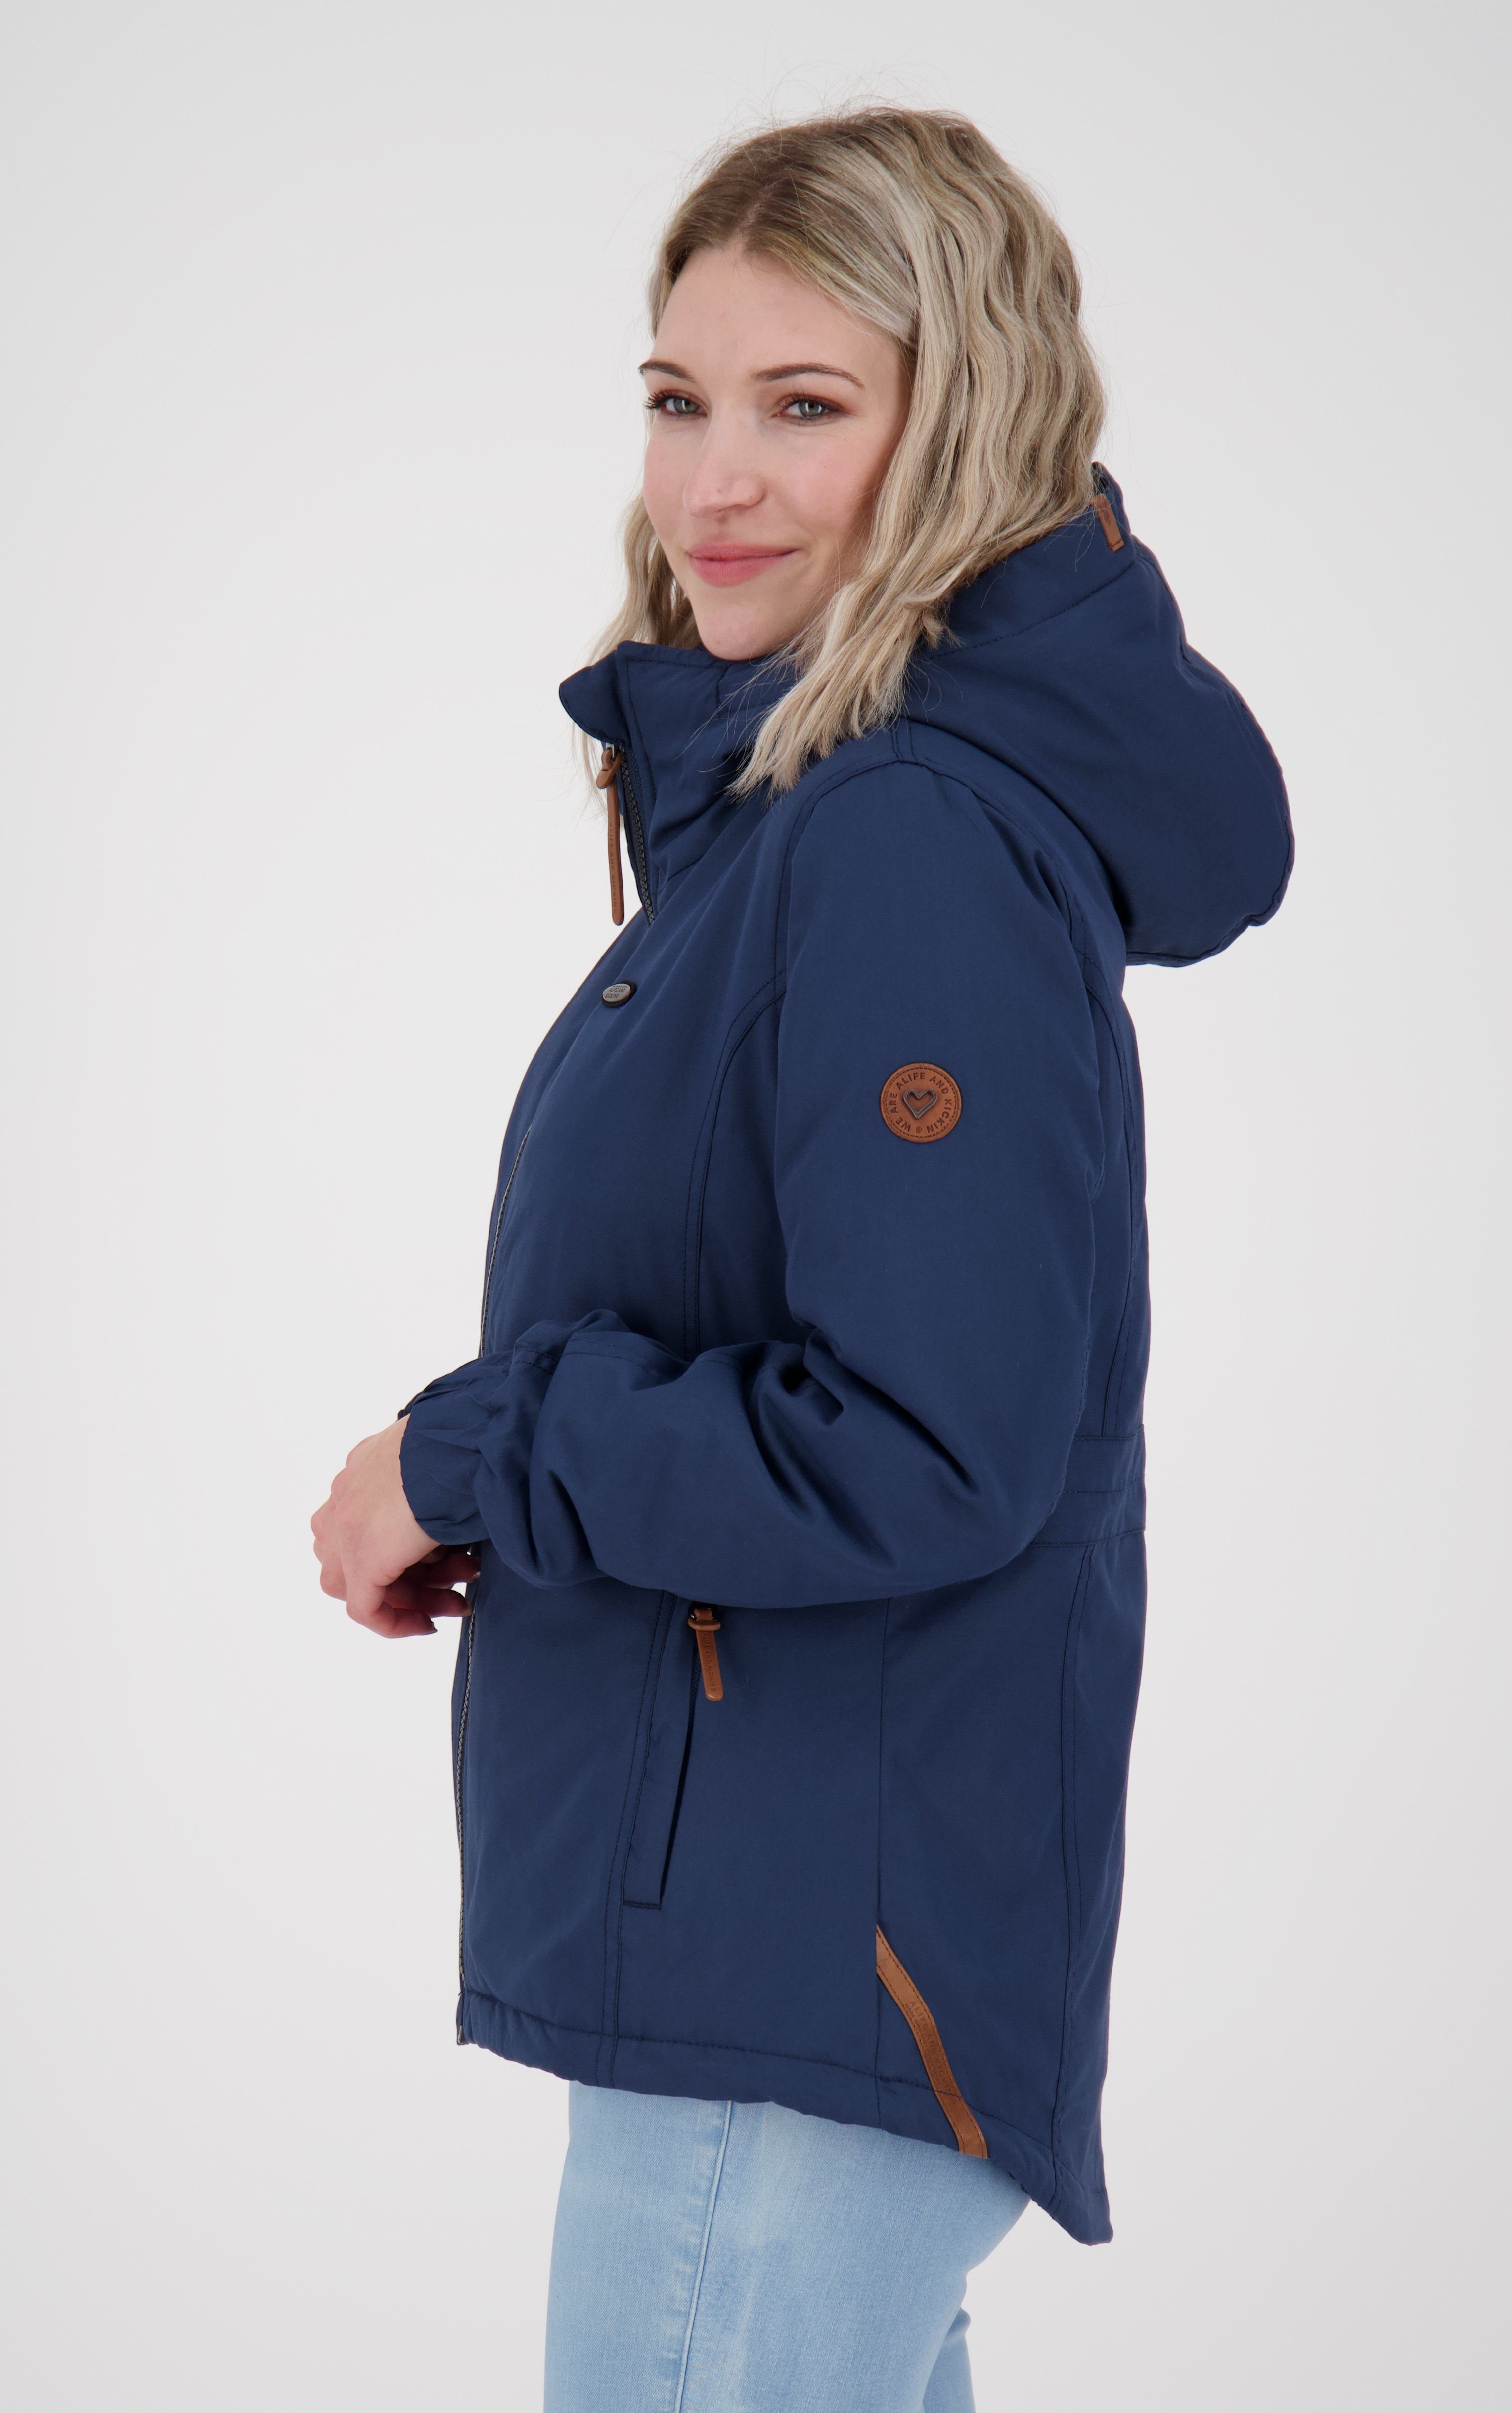 Alife & Kickin Winterjacke NAOMICA CS Jacket WOMEN mit Kapuze